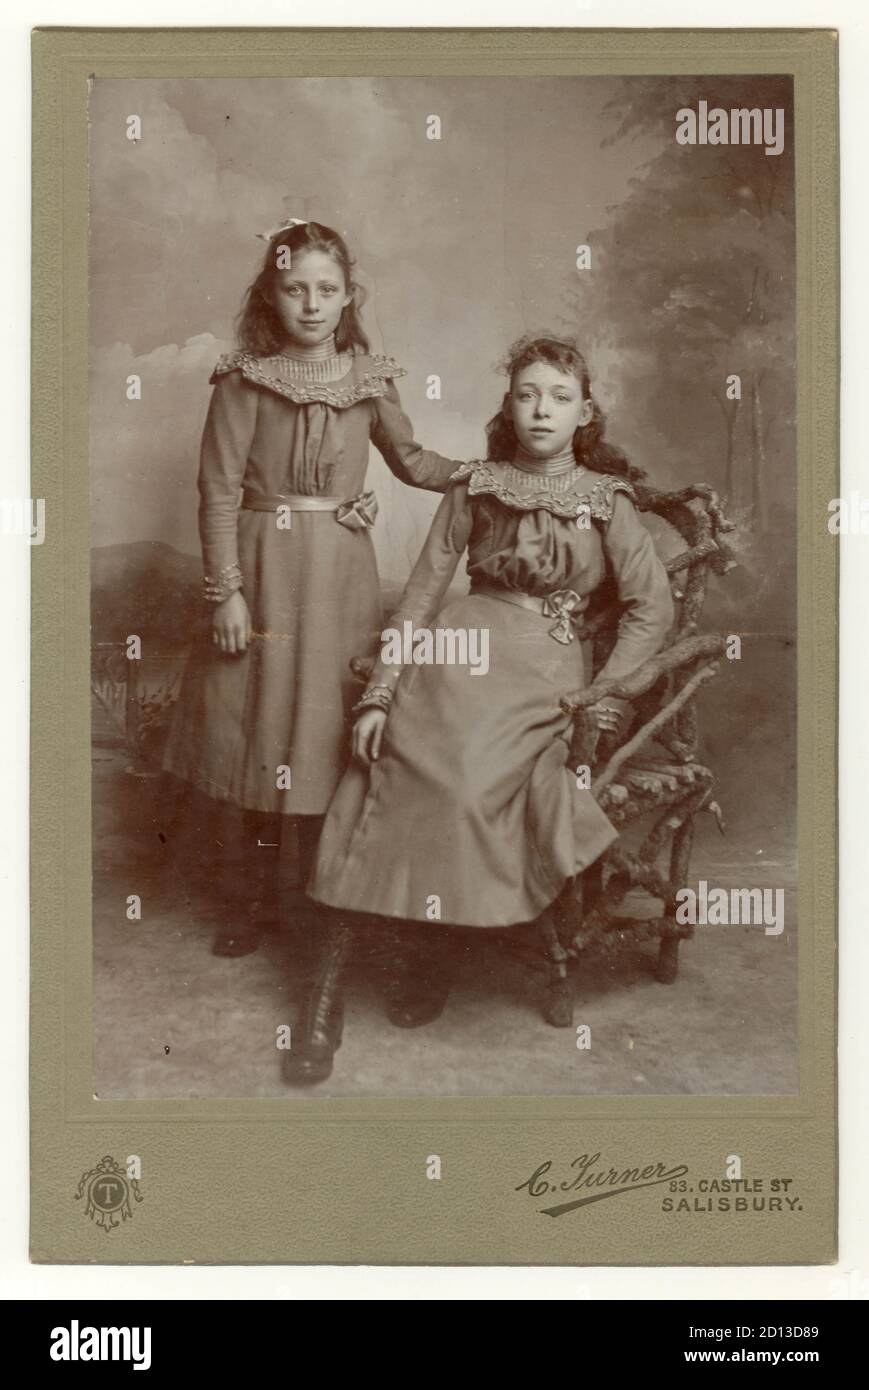 Ritratto di due belle ragazze giovani, probabilmente sorelle - late1890's a inizio '900's, Salisbury, Wiltshire, Inghilterra, Regno Unito Foto Stock